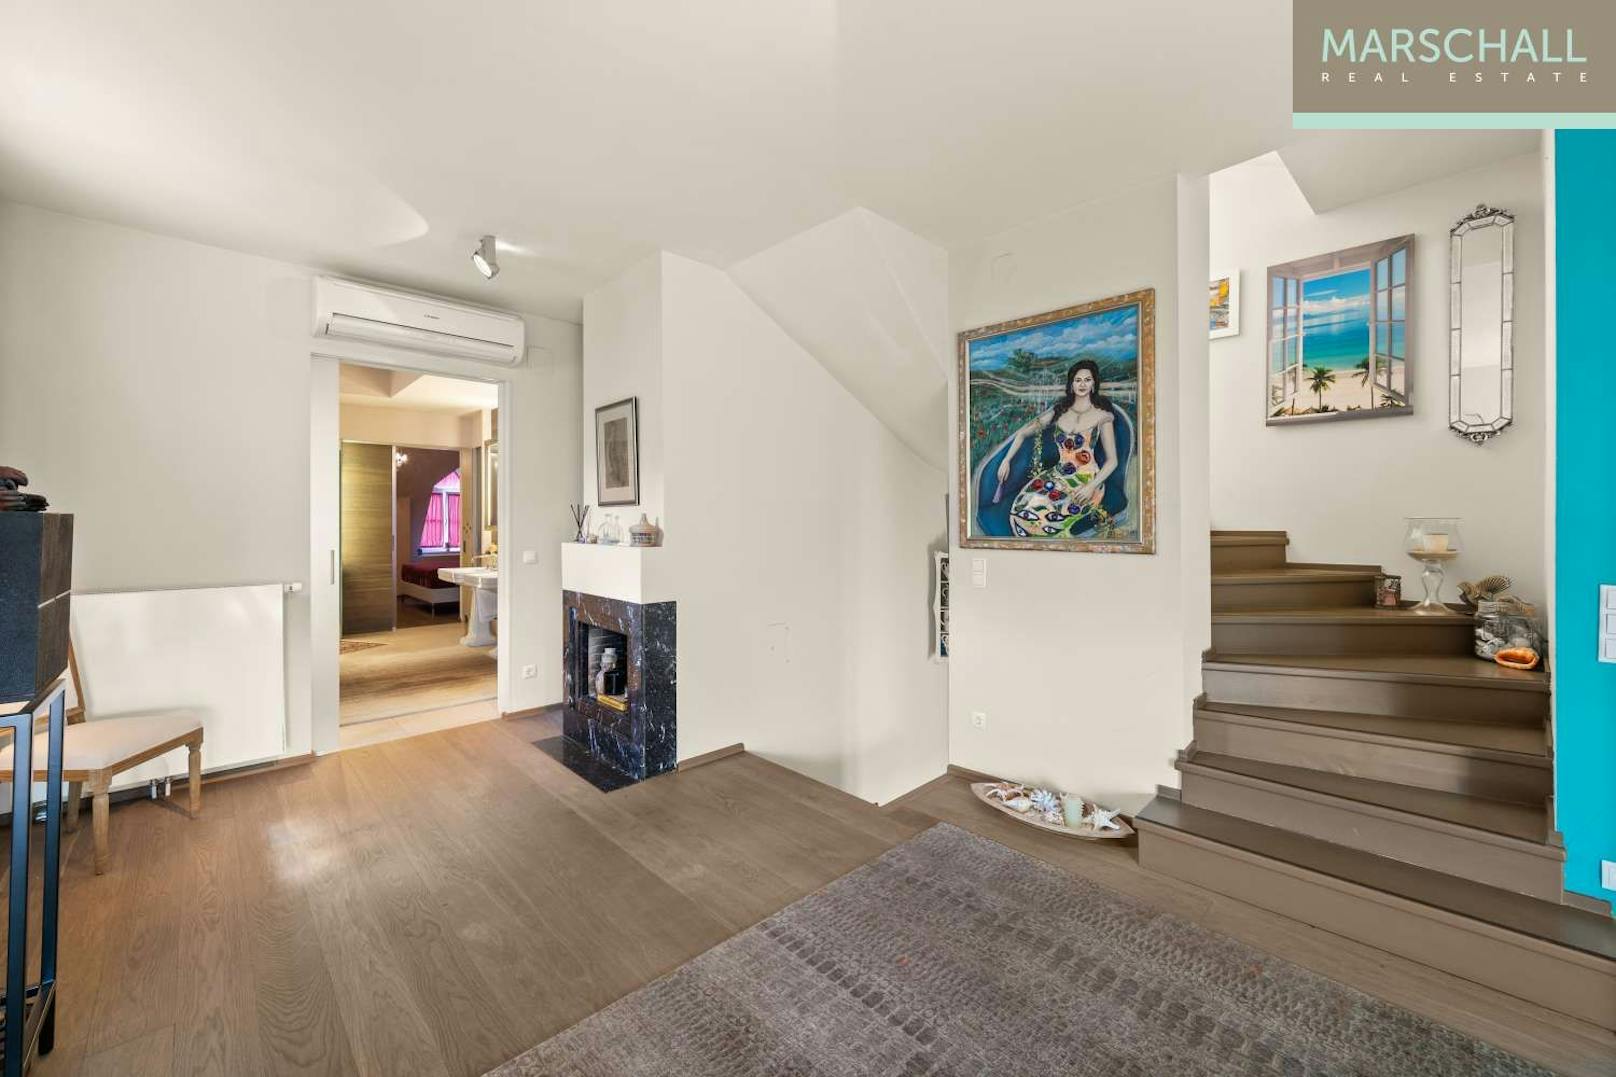 Anna Netrebko verkauft ihr Wiener Luxus-Penthouse um 3,9 Millionen Euro. So sieht es darin aus.